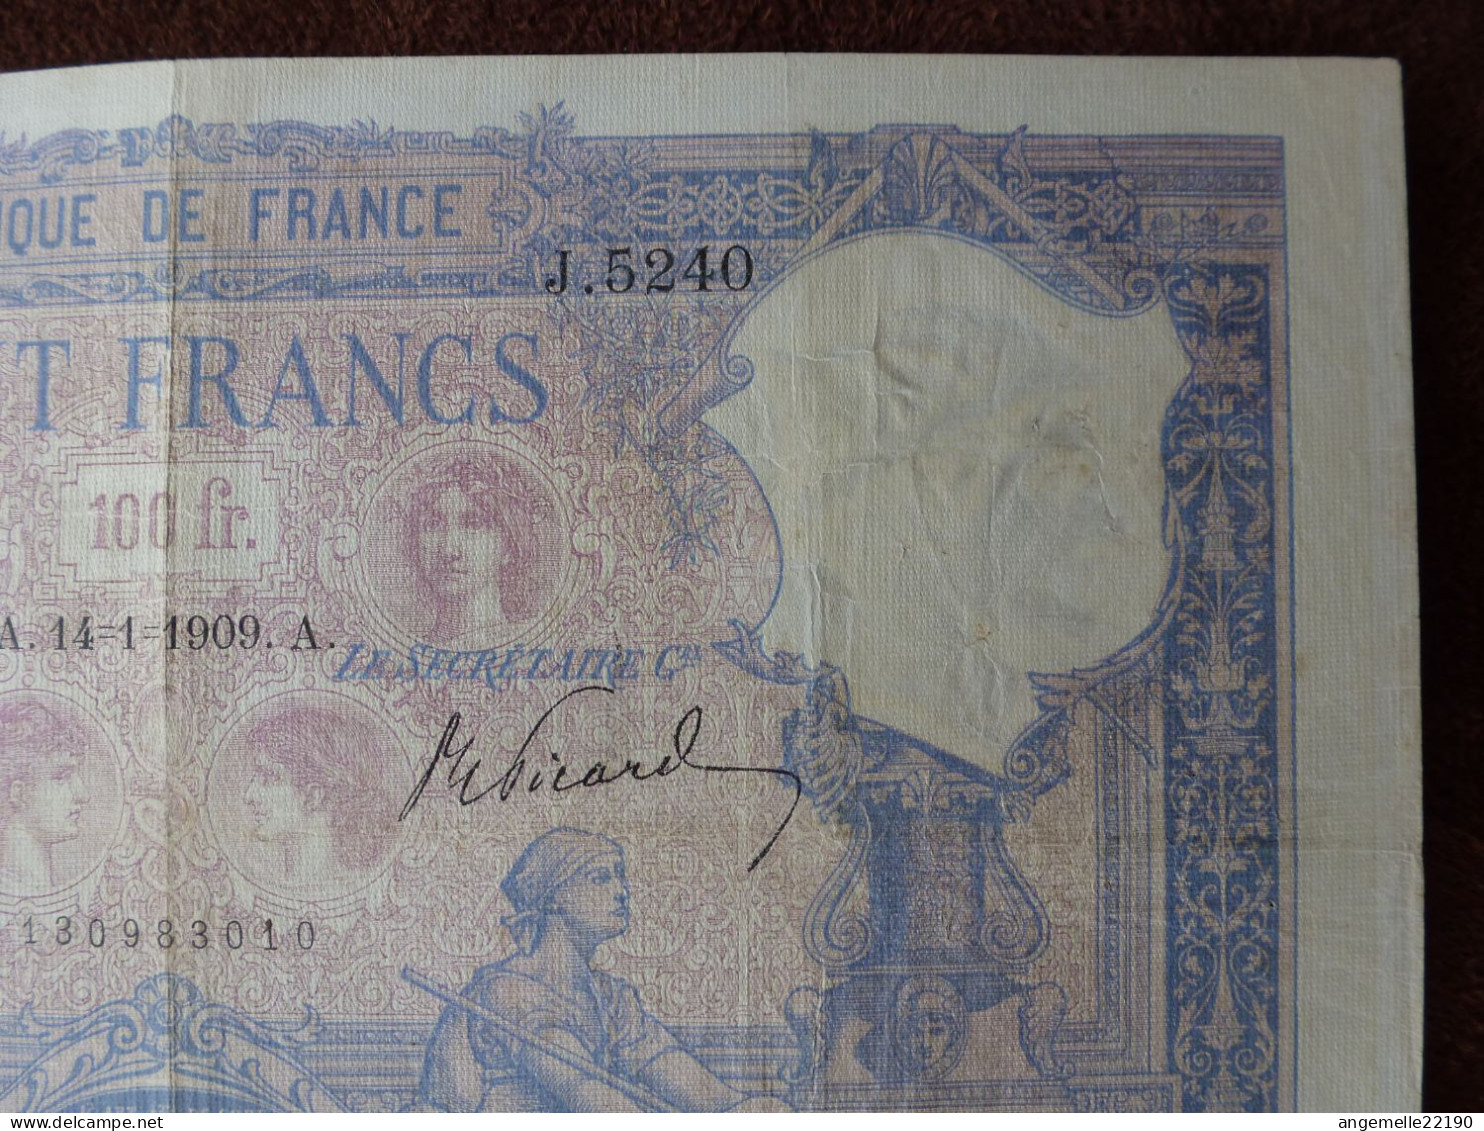 1 Billets De  100 FR  BLEU  DE 1909 / FAY 21/22  LETTRE A   TTB - ...-1889 Anciens Francs Circulés Au XIXème